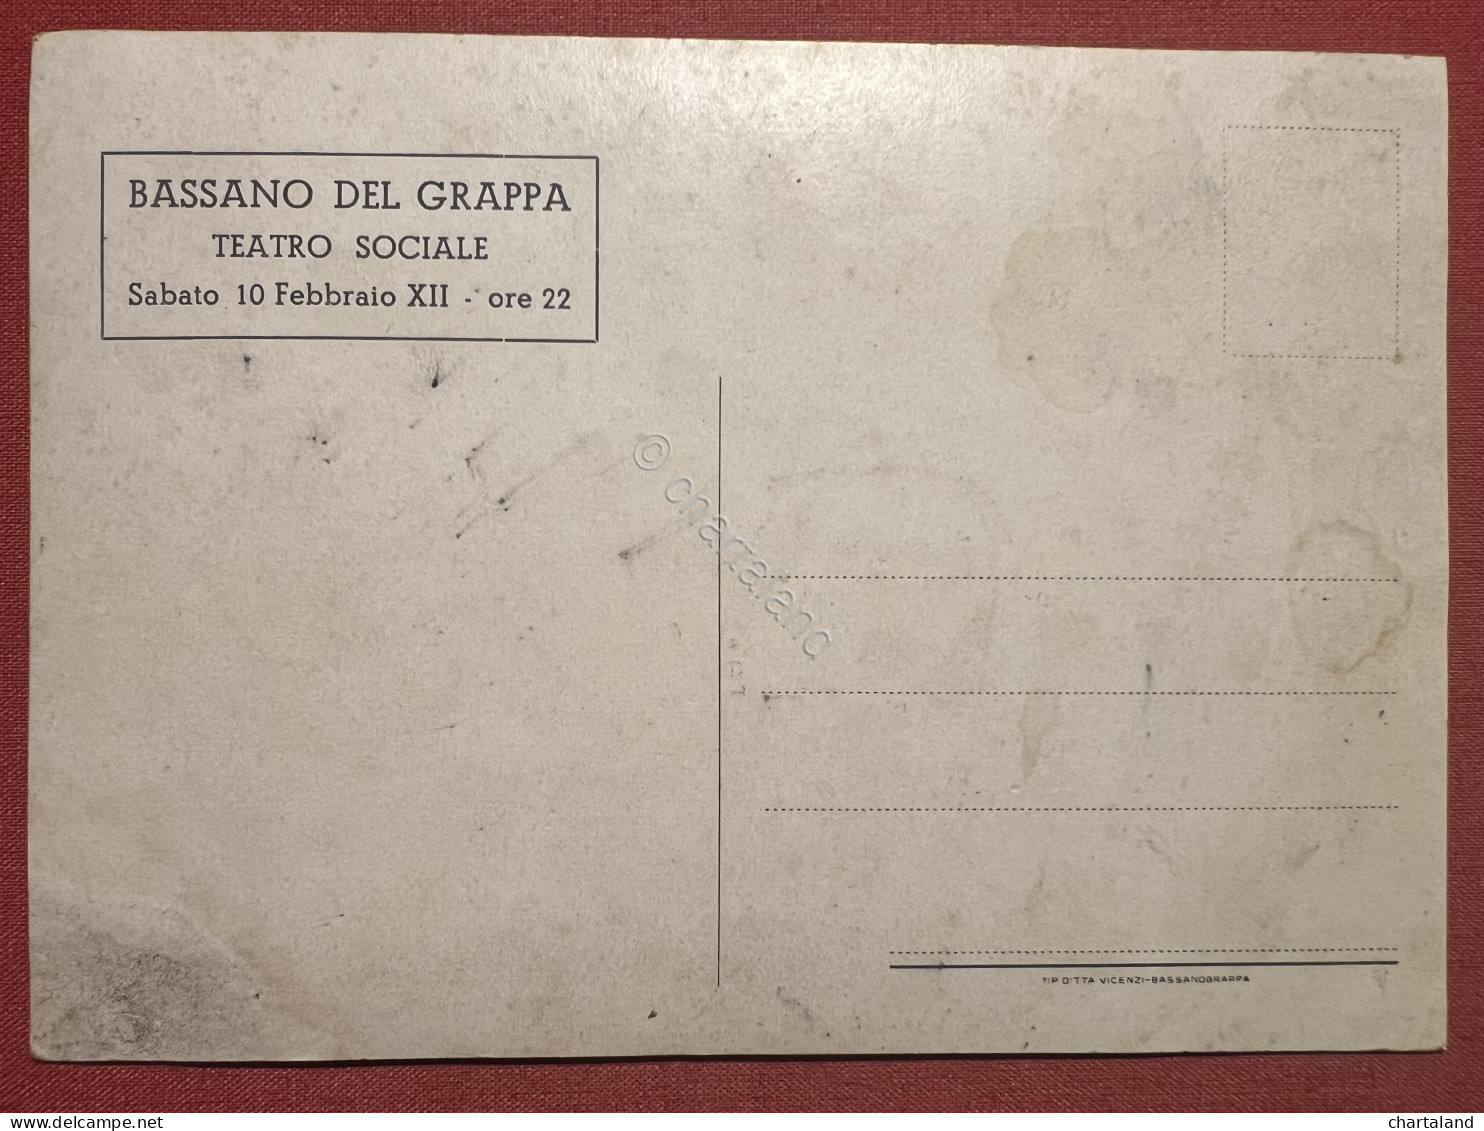 Cartolina Pubblicitaria - Apri L'Occhio - Bassano Del Grappa Teatro Sociale 1934 - Vicenza